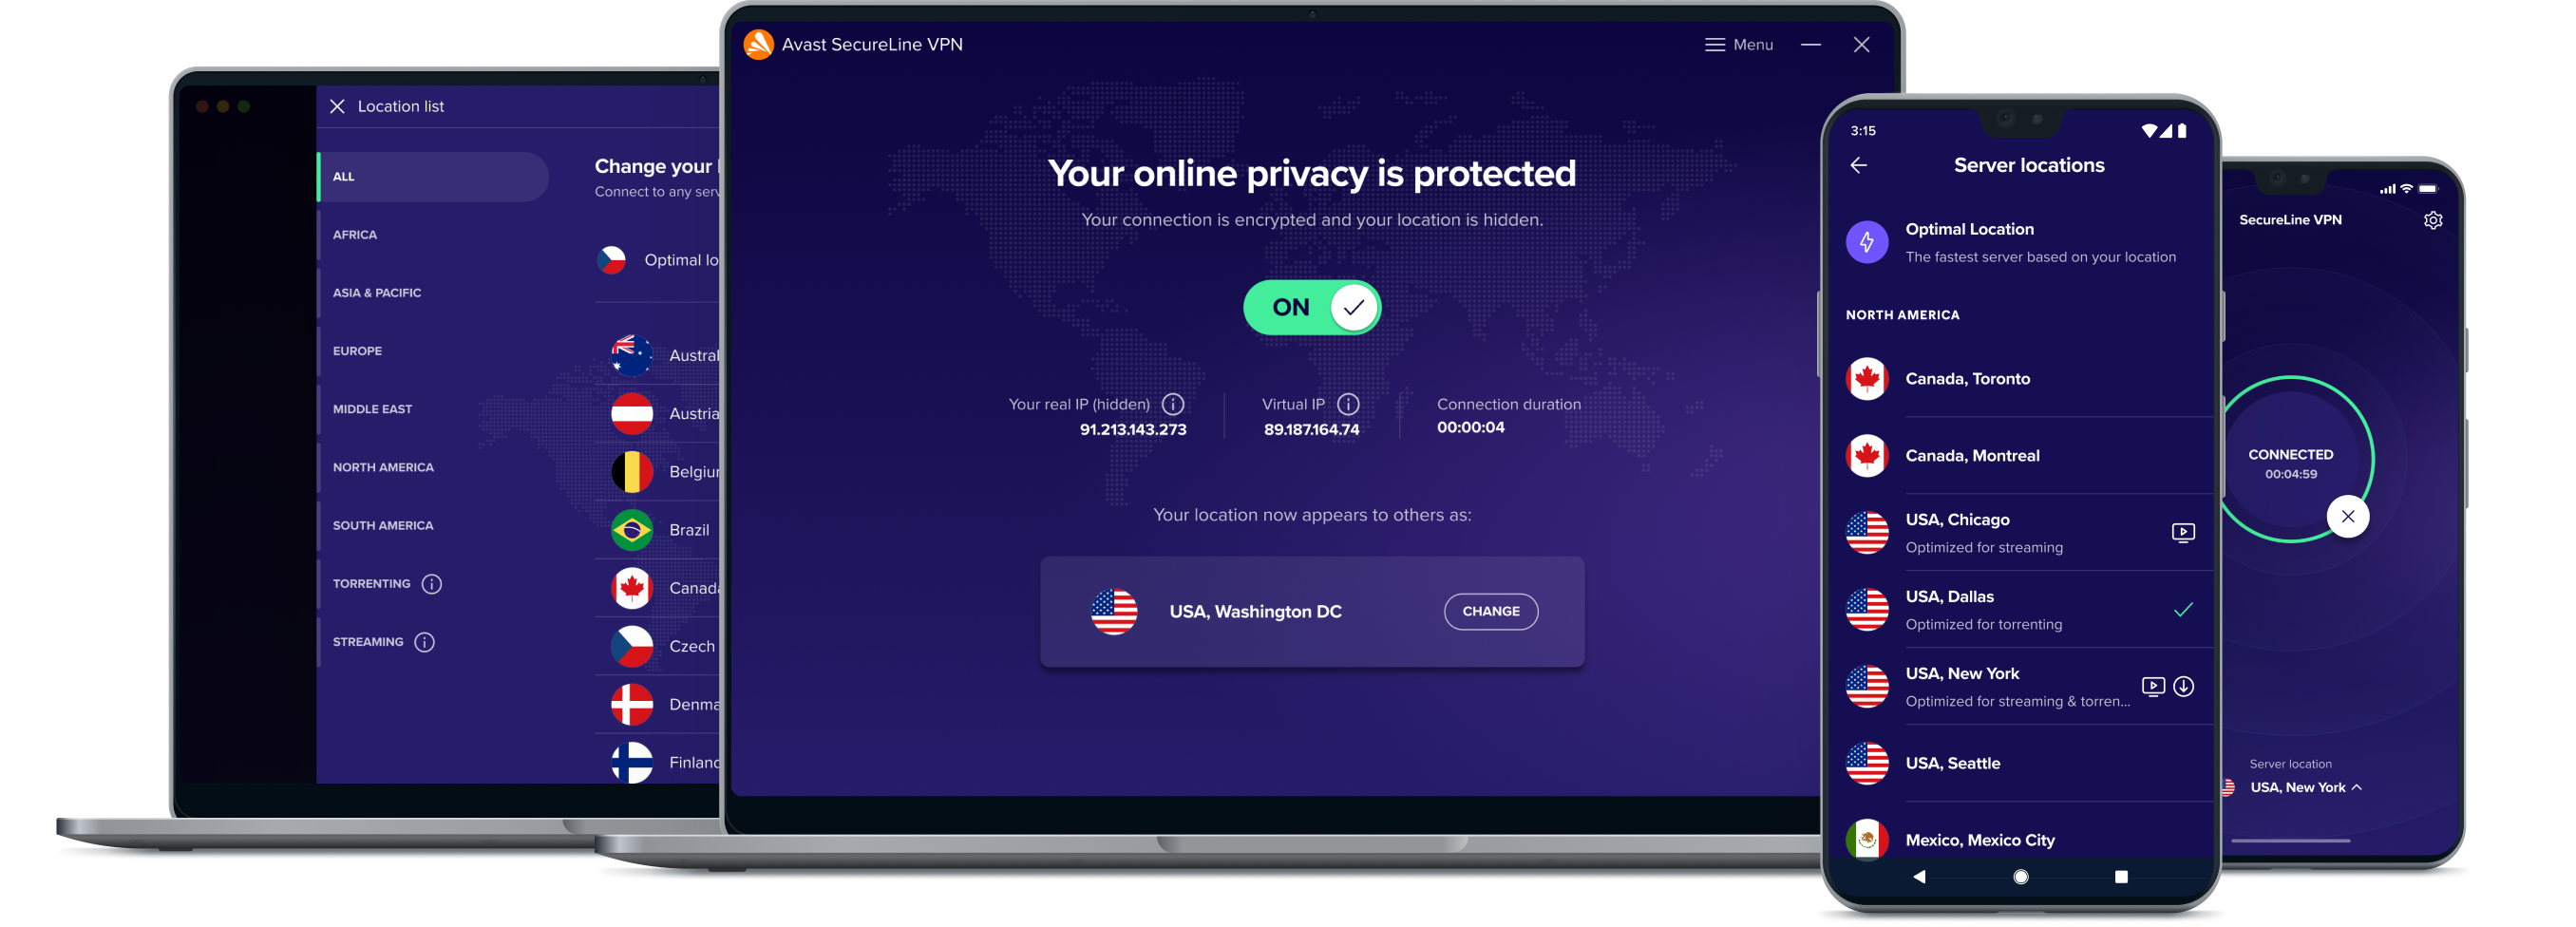 Sblocca la migliore libertà online con il nostro servizio VPN